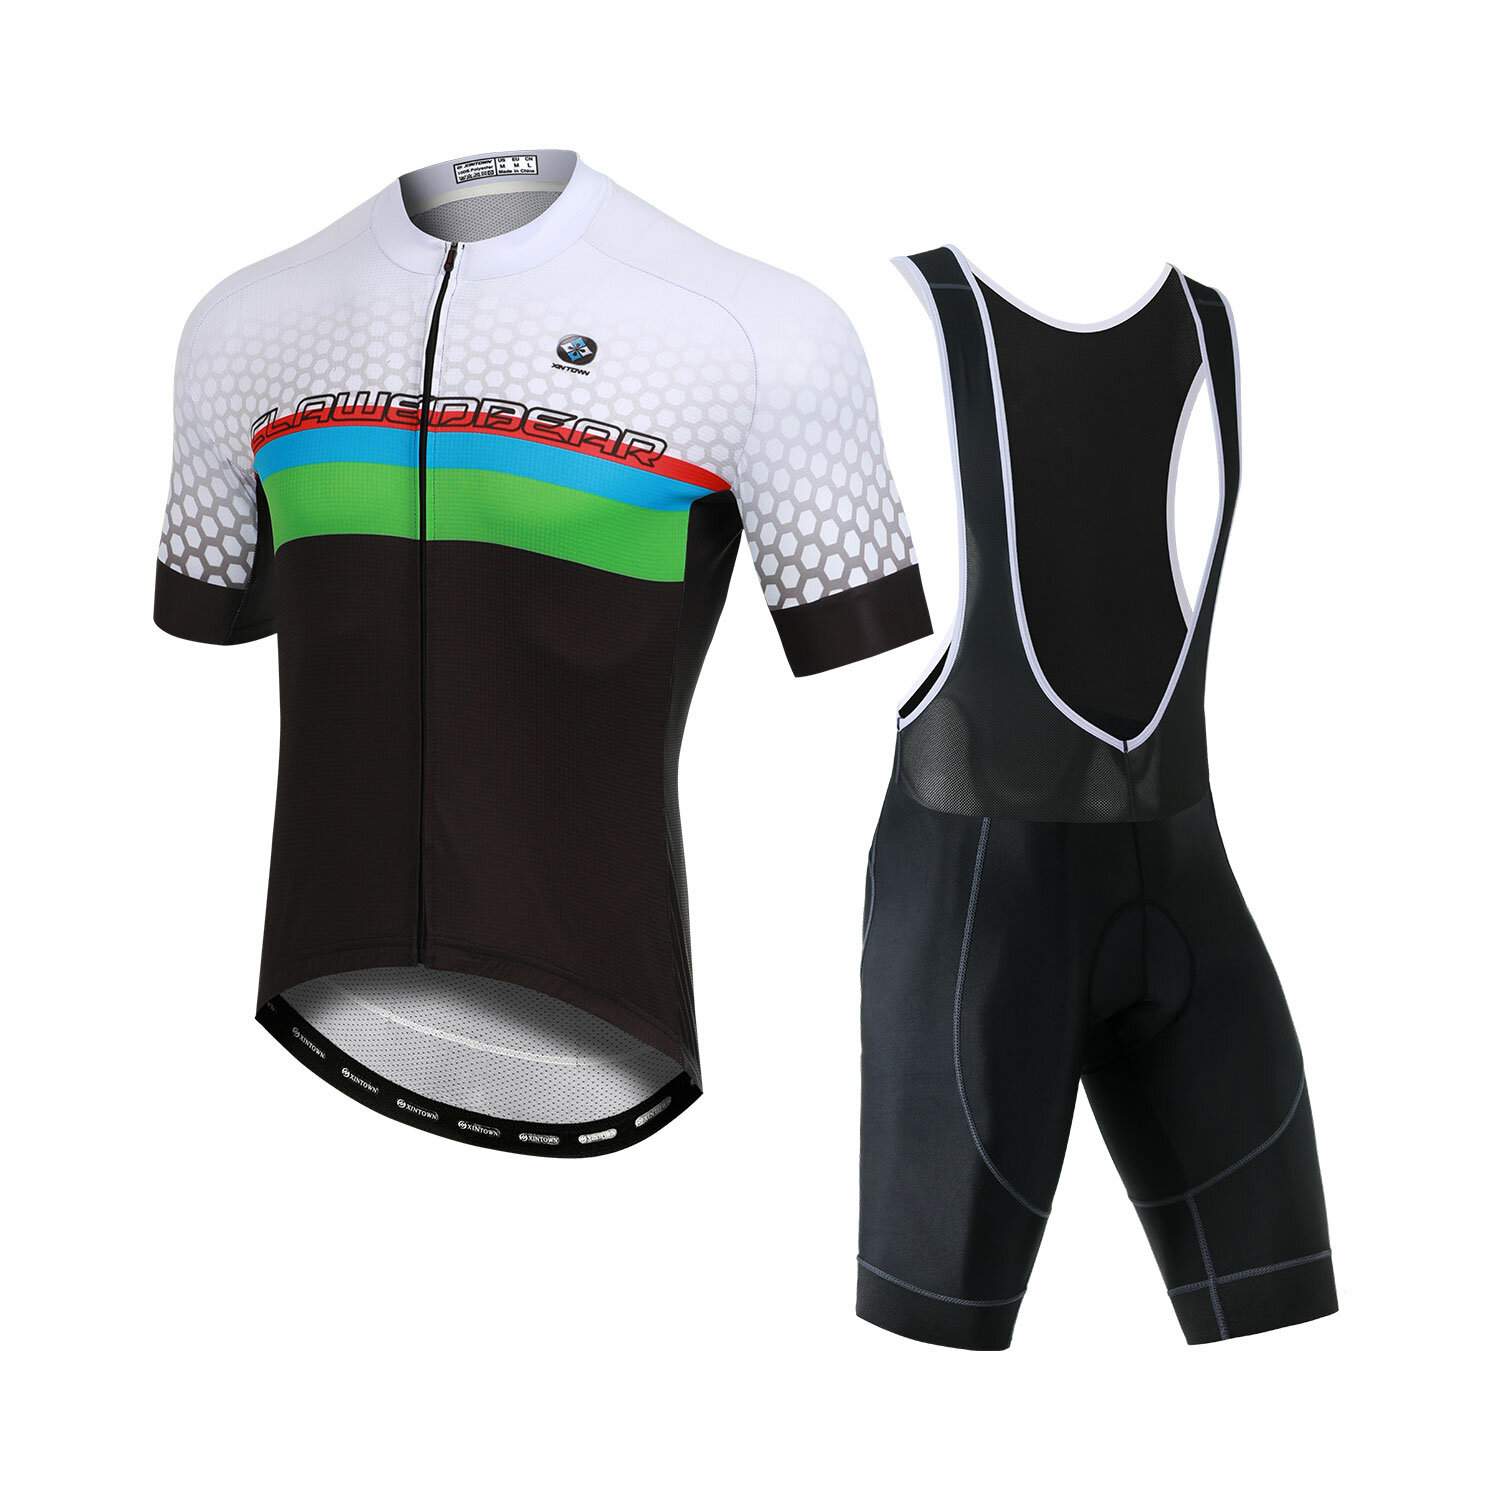 Ανδρική μπλούζα ποδηλασίας XINTOWN με ύφασμα γρήγορου στεγνώματος που απομακρύνει την υγρασία για ρούχα ποδηλάτου MTB